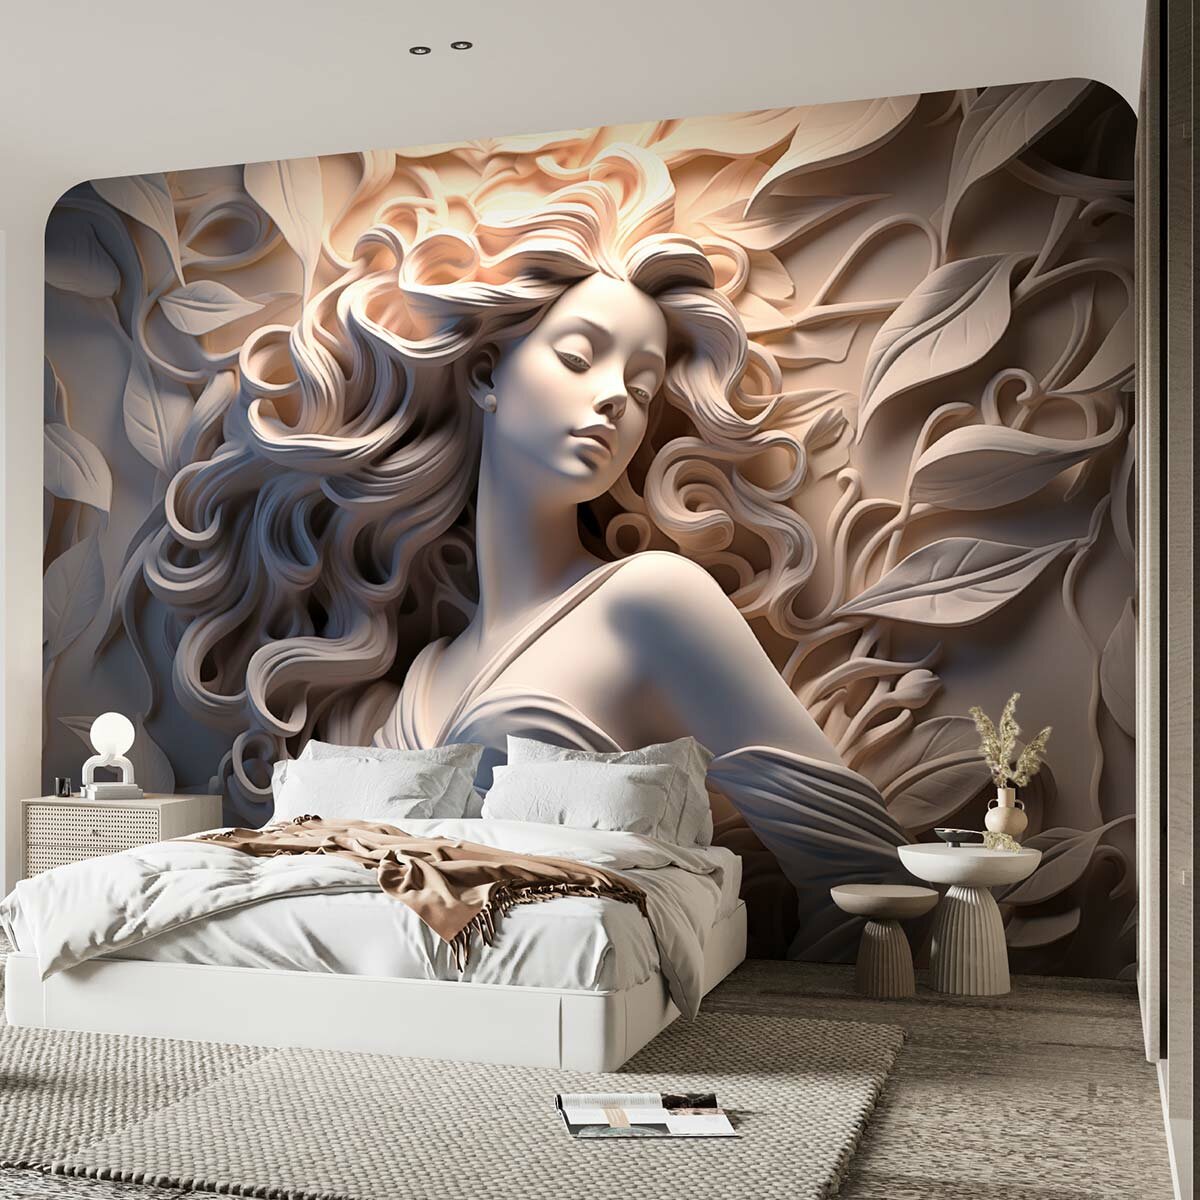 Фотообои флизелиновые с виниловым покрытием VEROL "Девушка", 500х283 см, моющиеся обои на стену, декор для дома